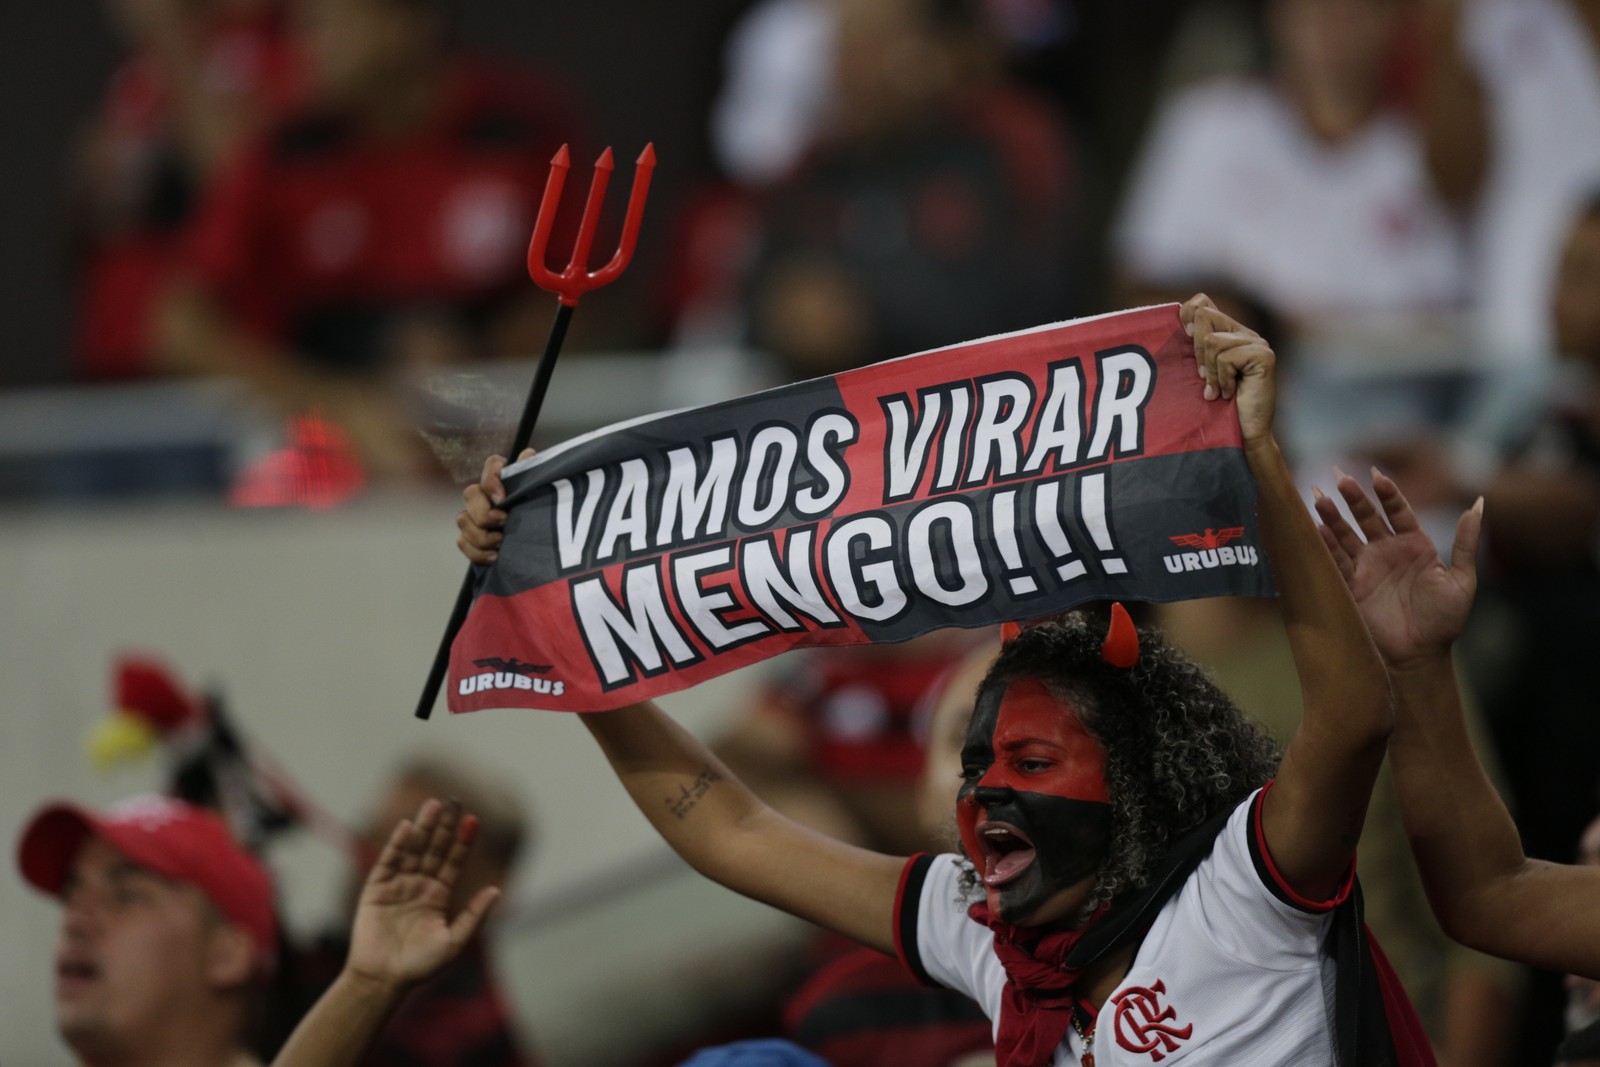 Virou. Flamengo começou partida de volta no Maracanã com a desvantagem de ter perdido de 2 a 1 em Minas — Foto: Alexandre Cassiano / Agência O Globo